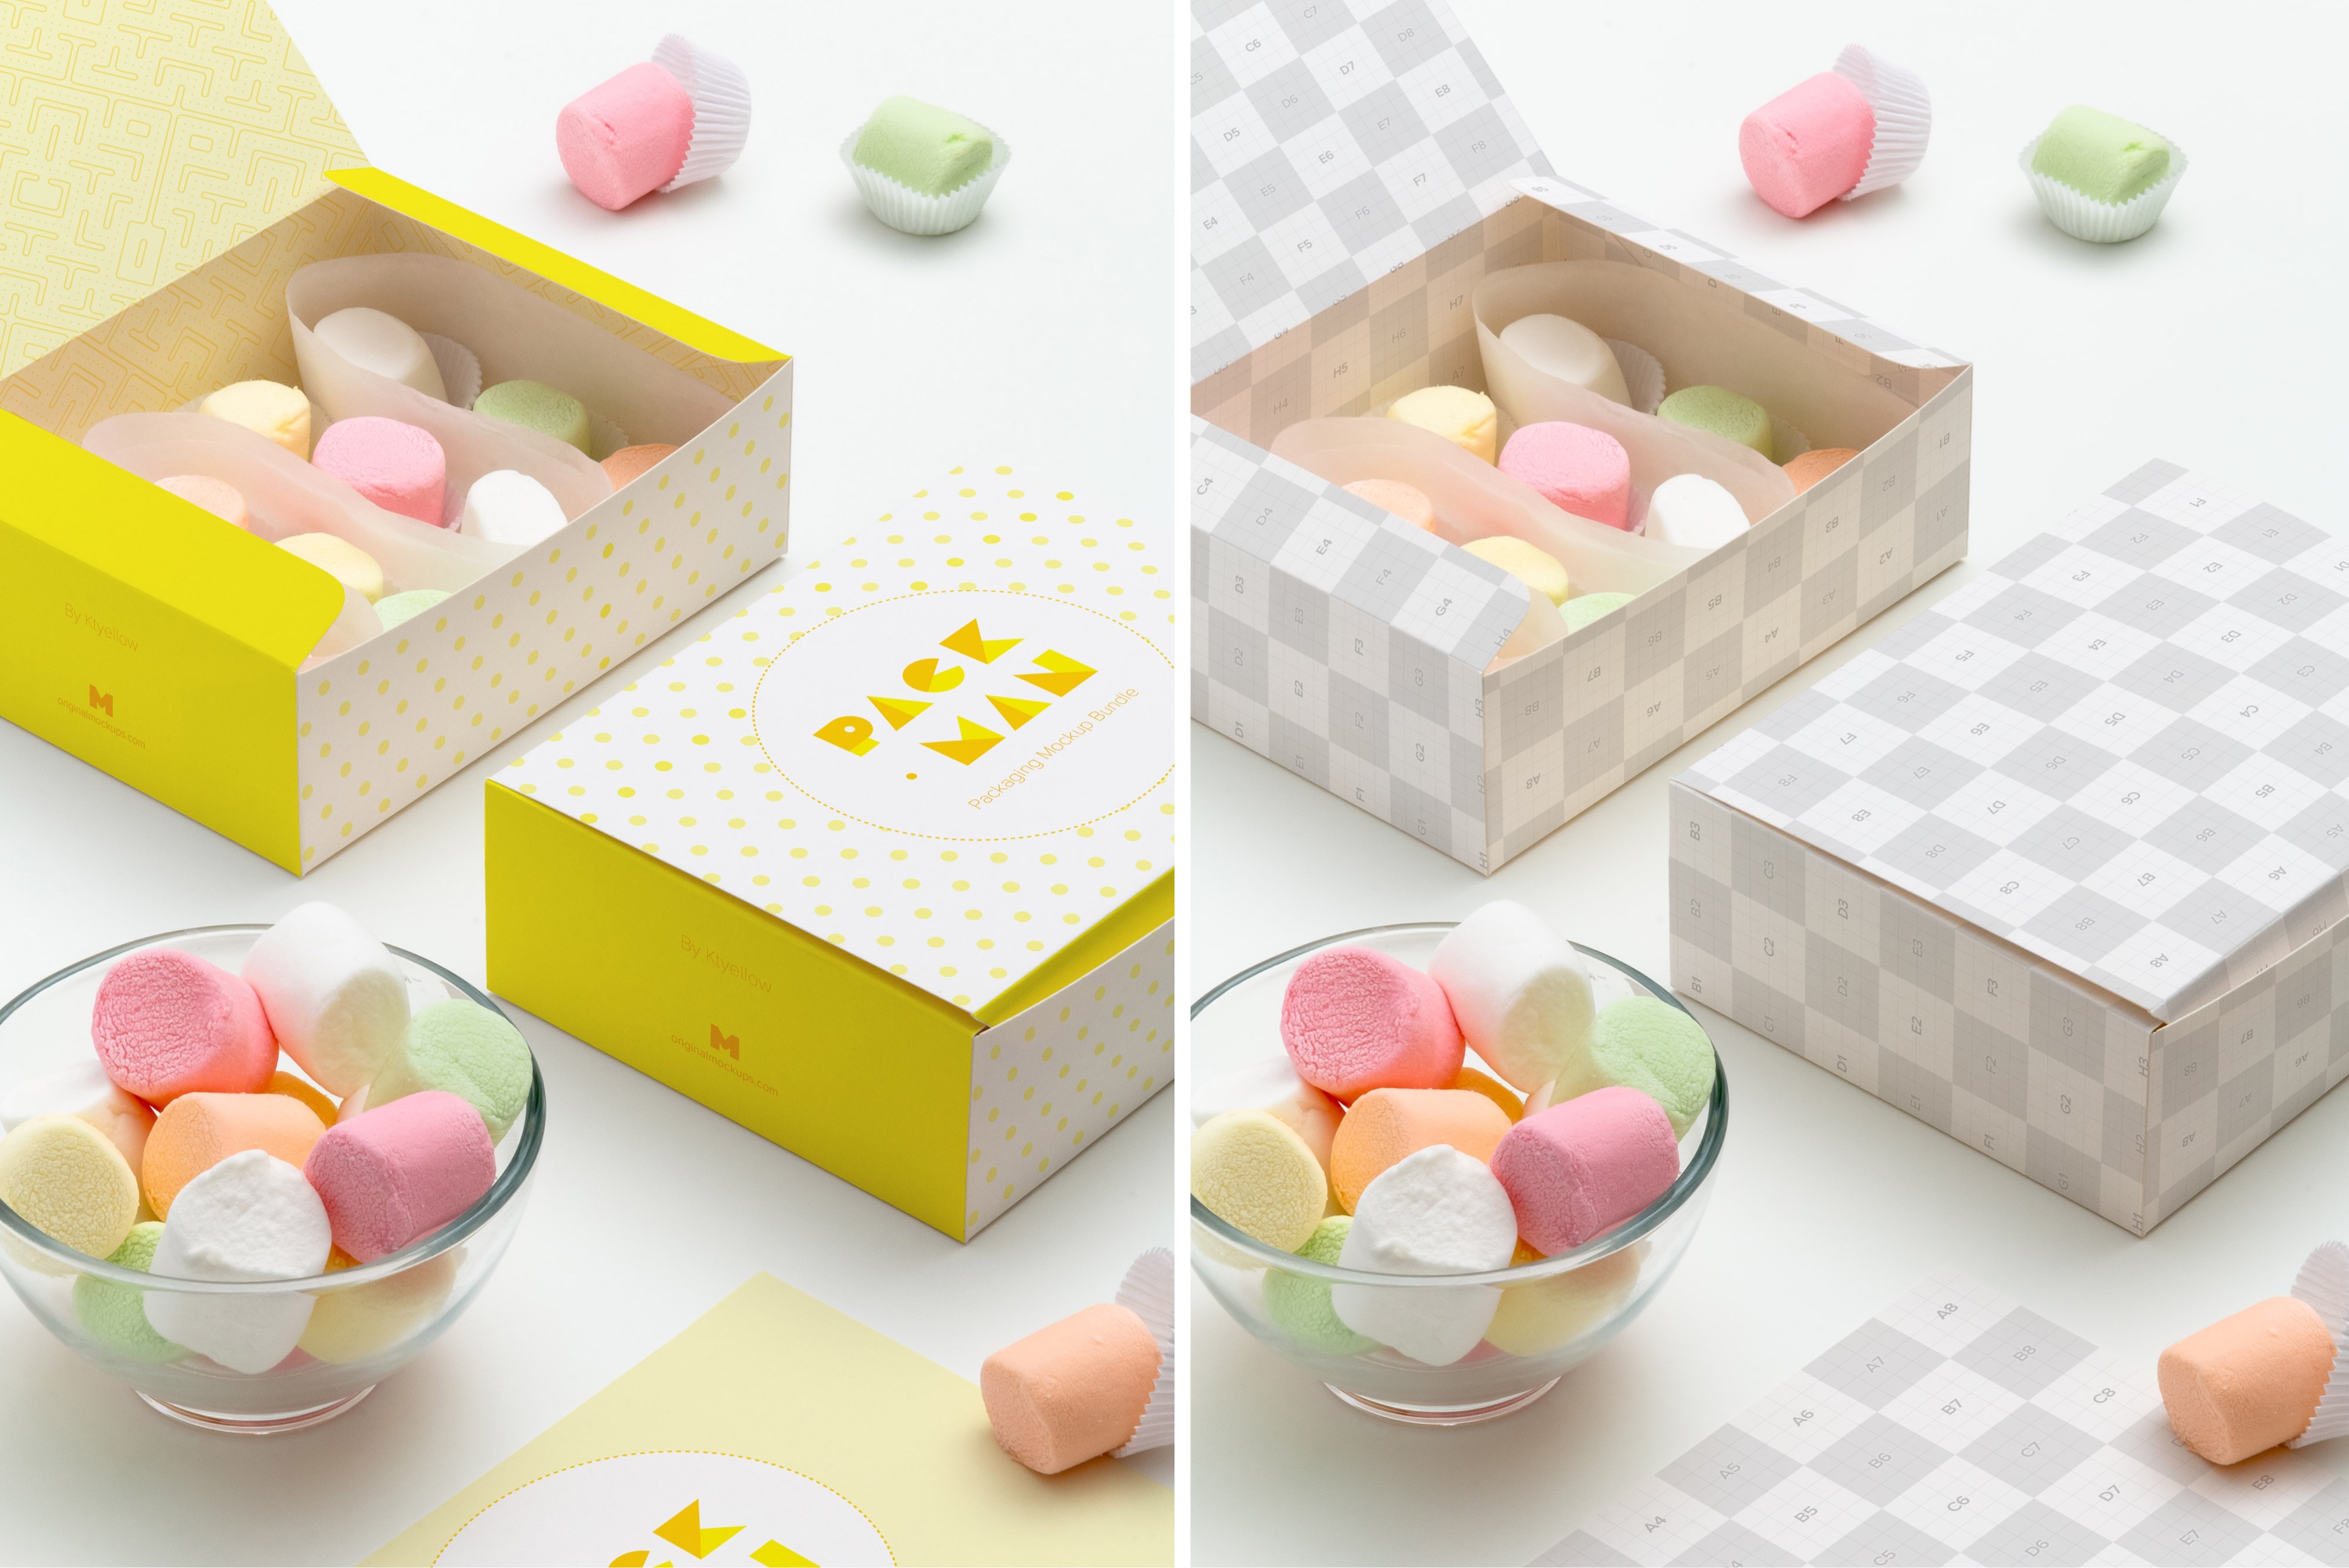 甜点烘焙糕点包装盒设计样机04 Sweet Box Mockup 04插图(2)